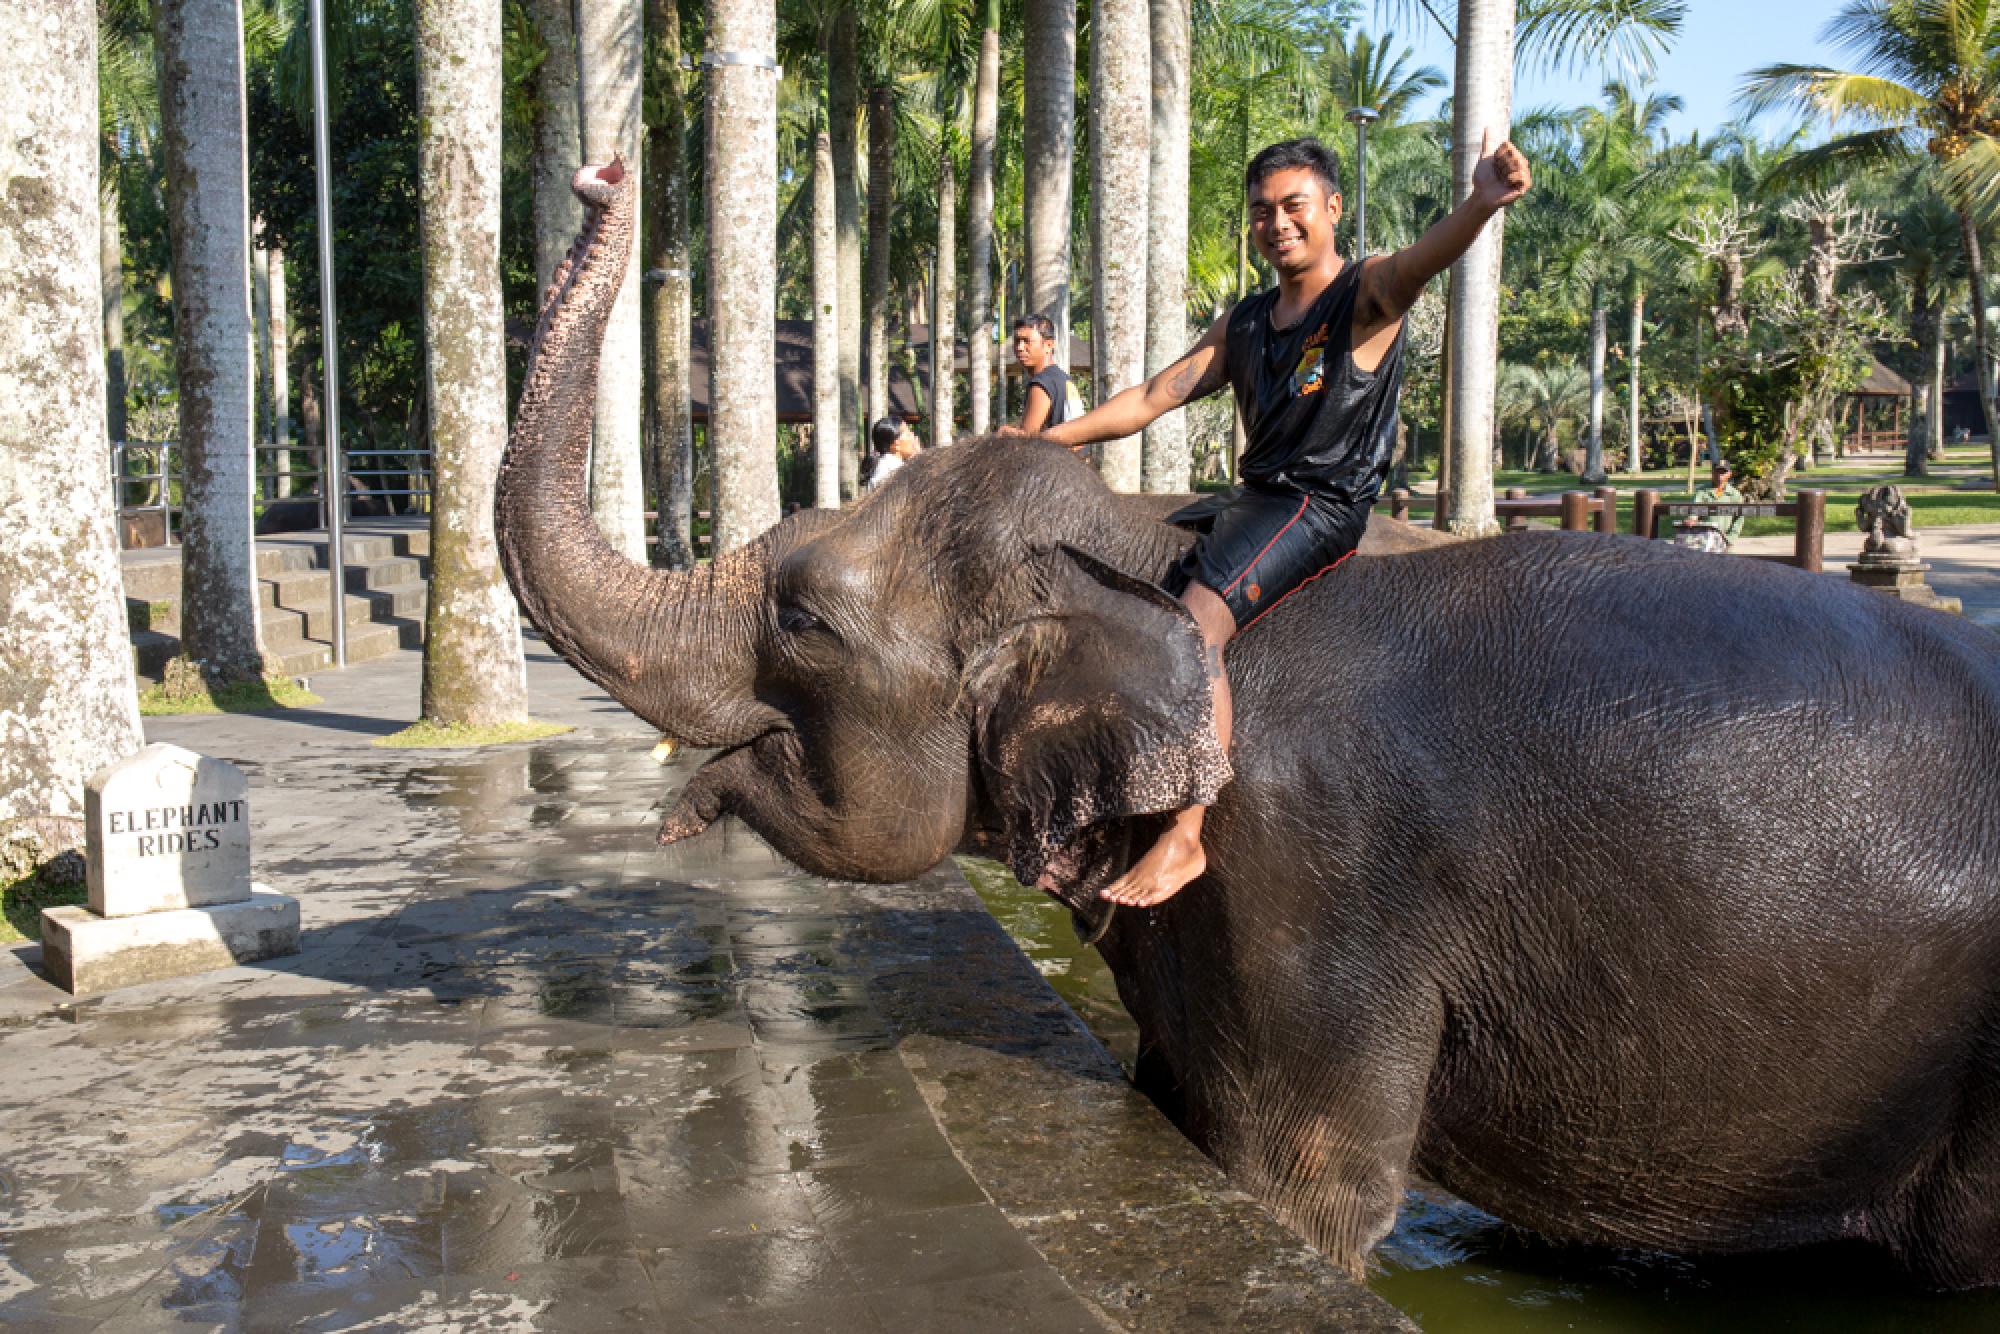 over Kaptajn brie Hændelse, begivenhed Elephant Safari Park Wildlife — Ubud, Indonesia